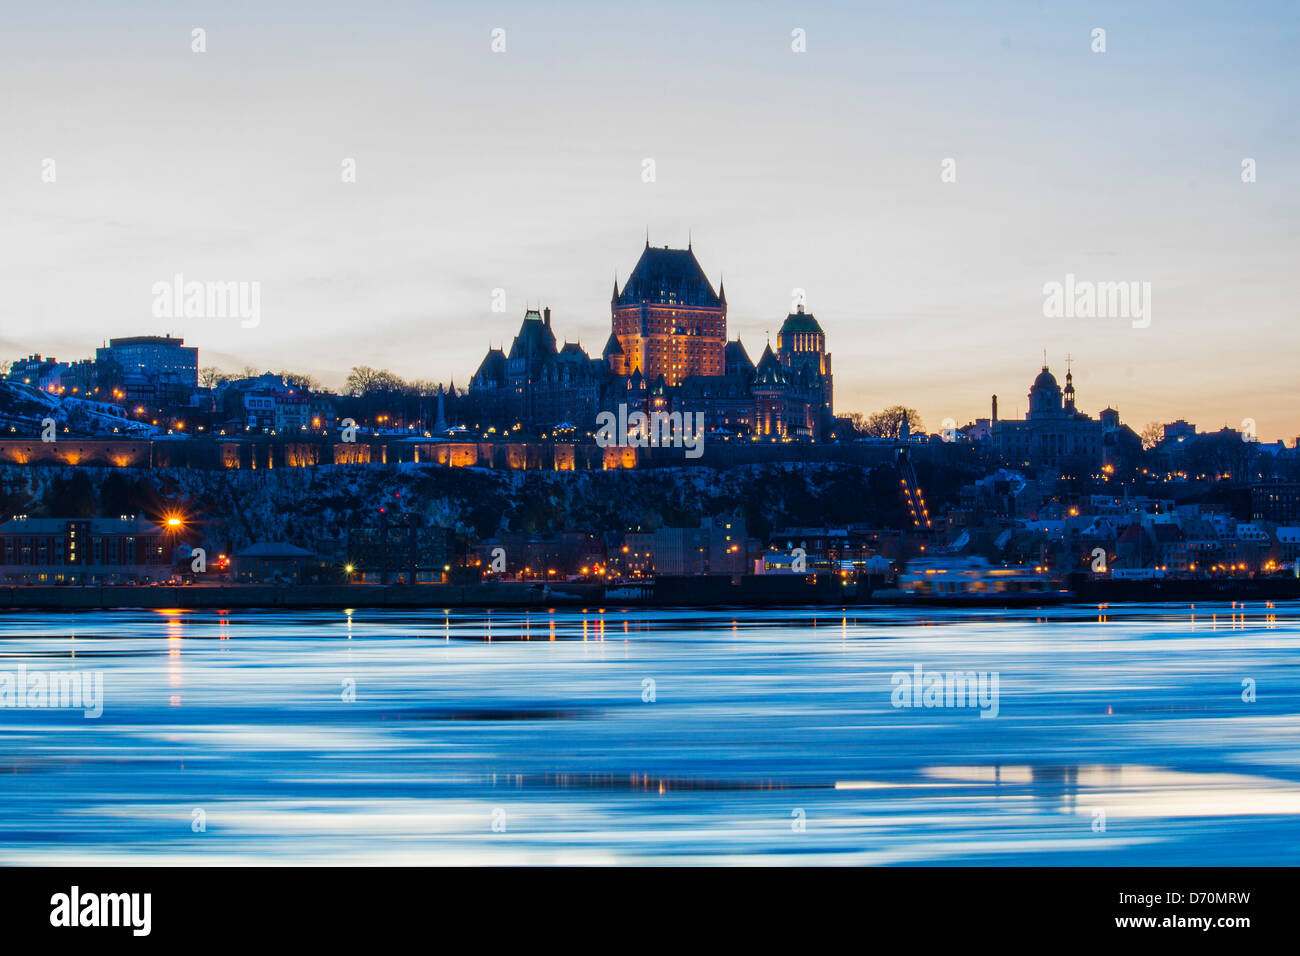 Château Frontenac à Québec, Canada par nuit. Avis de Levis en hiver nuit Banque D'Images